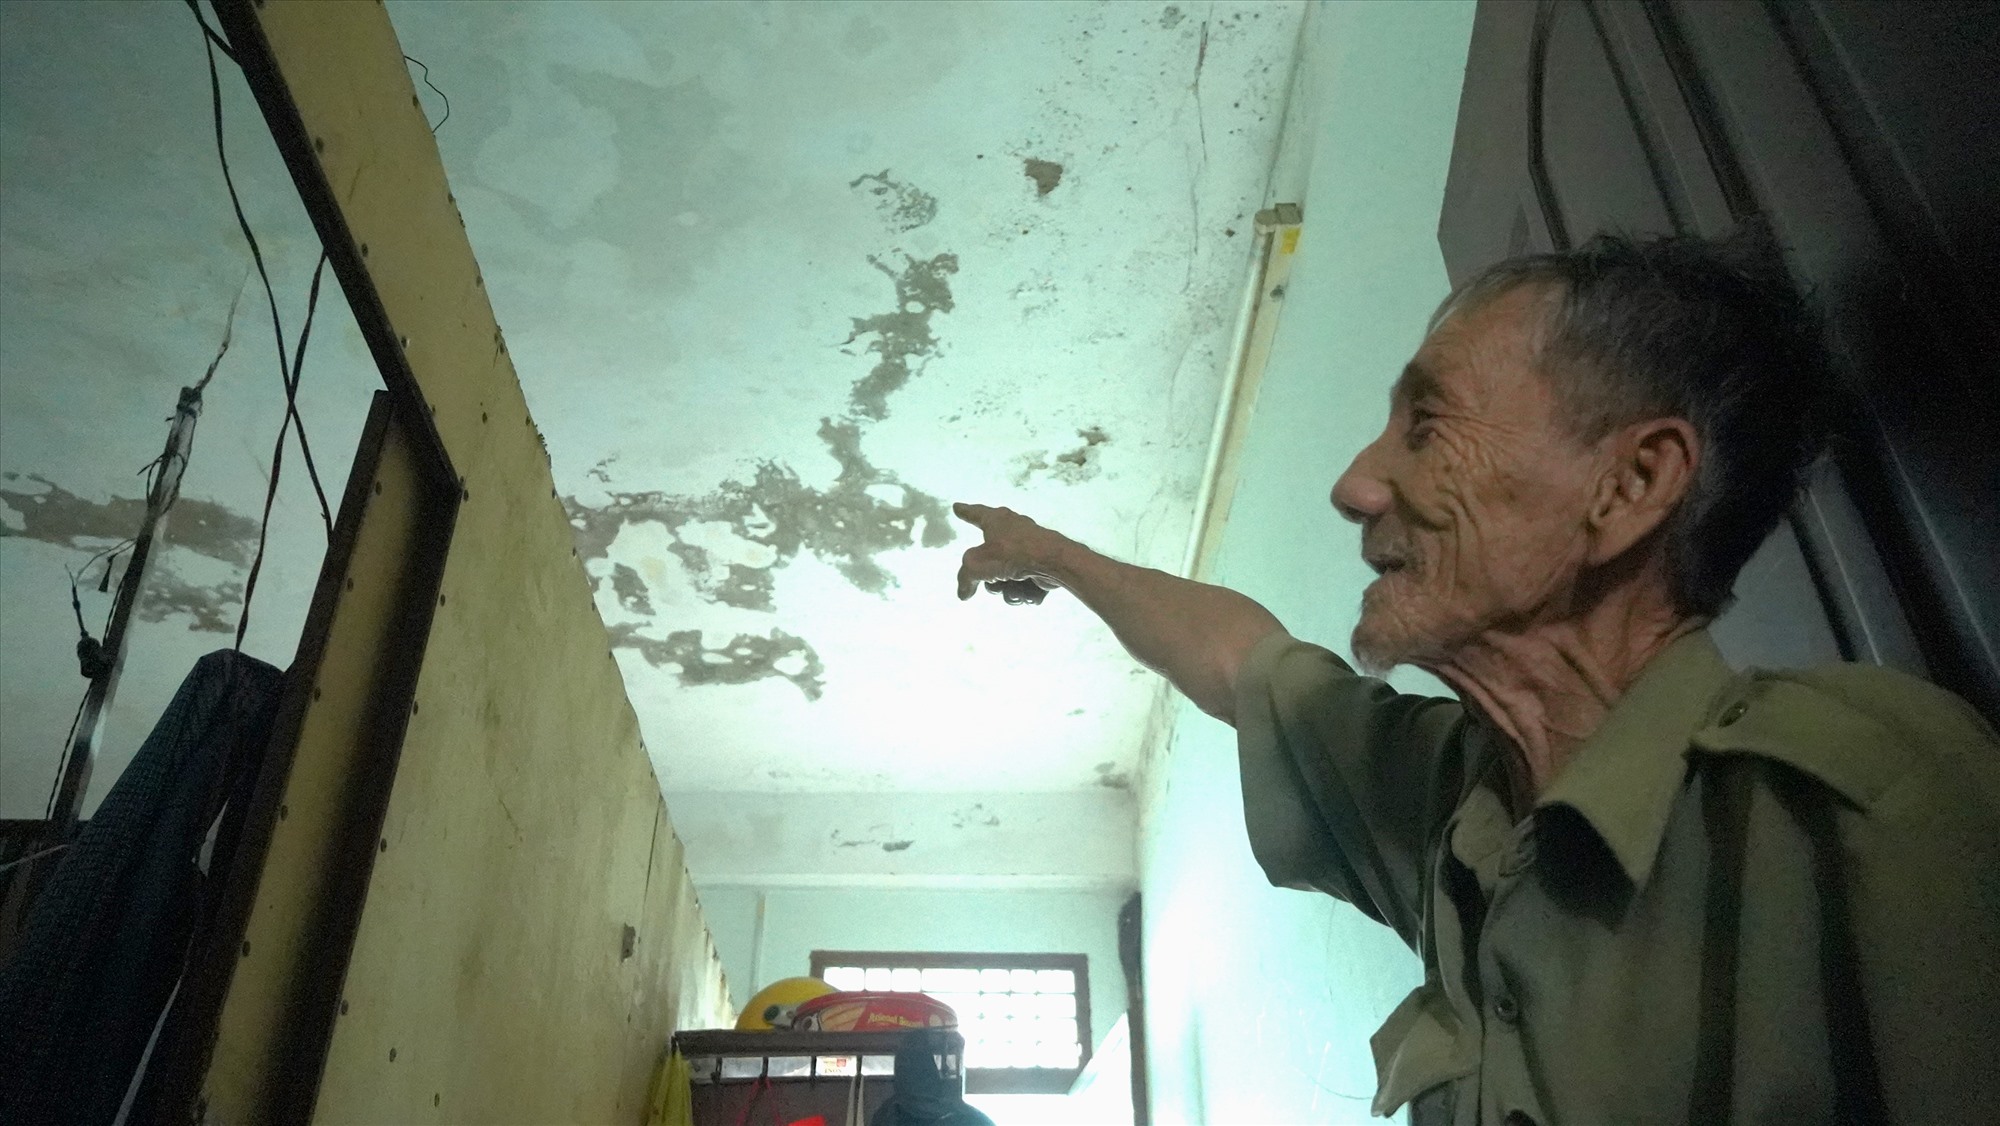 Ông Quách Kim An (sinh năm 1952) cho biết, nhà ông có 4 người, hiện tại đang sống trong căn hộ rộng khoảng 55m2 đầy ẩm mốc và từ lúc ở đến này chưa được tu sửa một lần nào.